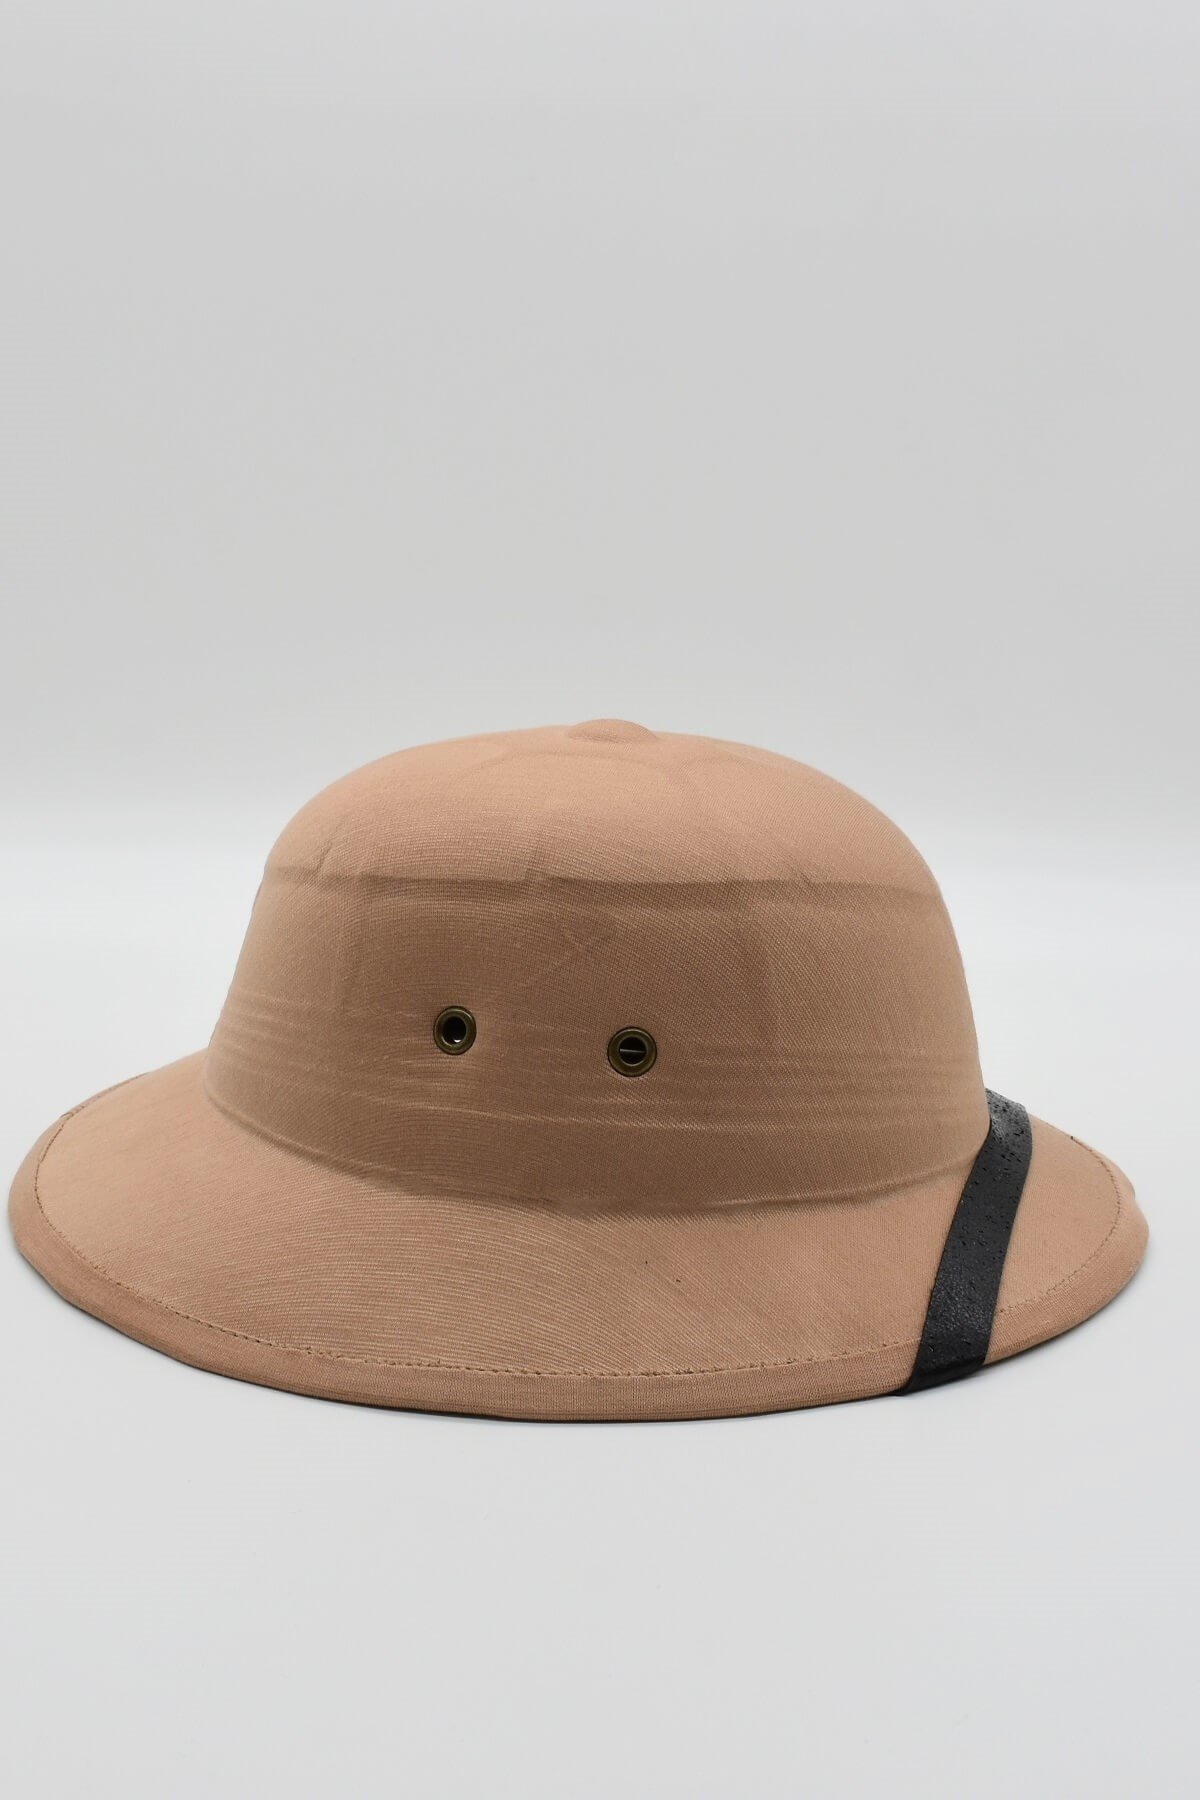 Külah Mantar Safari Erkek Toquilla Kask Outdoor Güneş Şapkası KLH0566